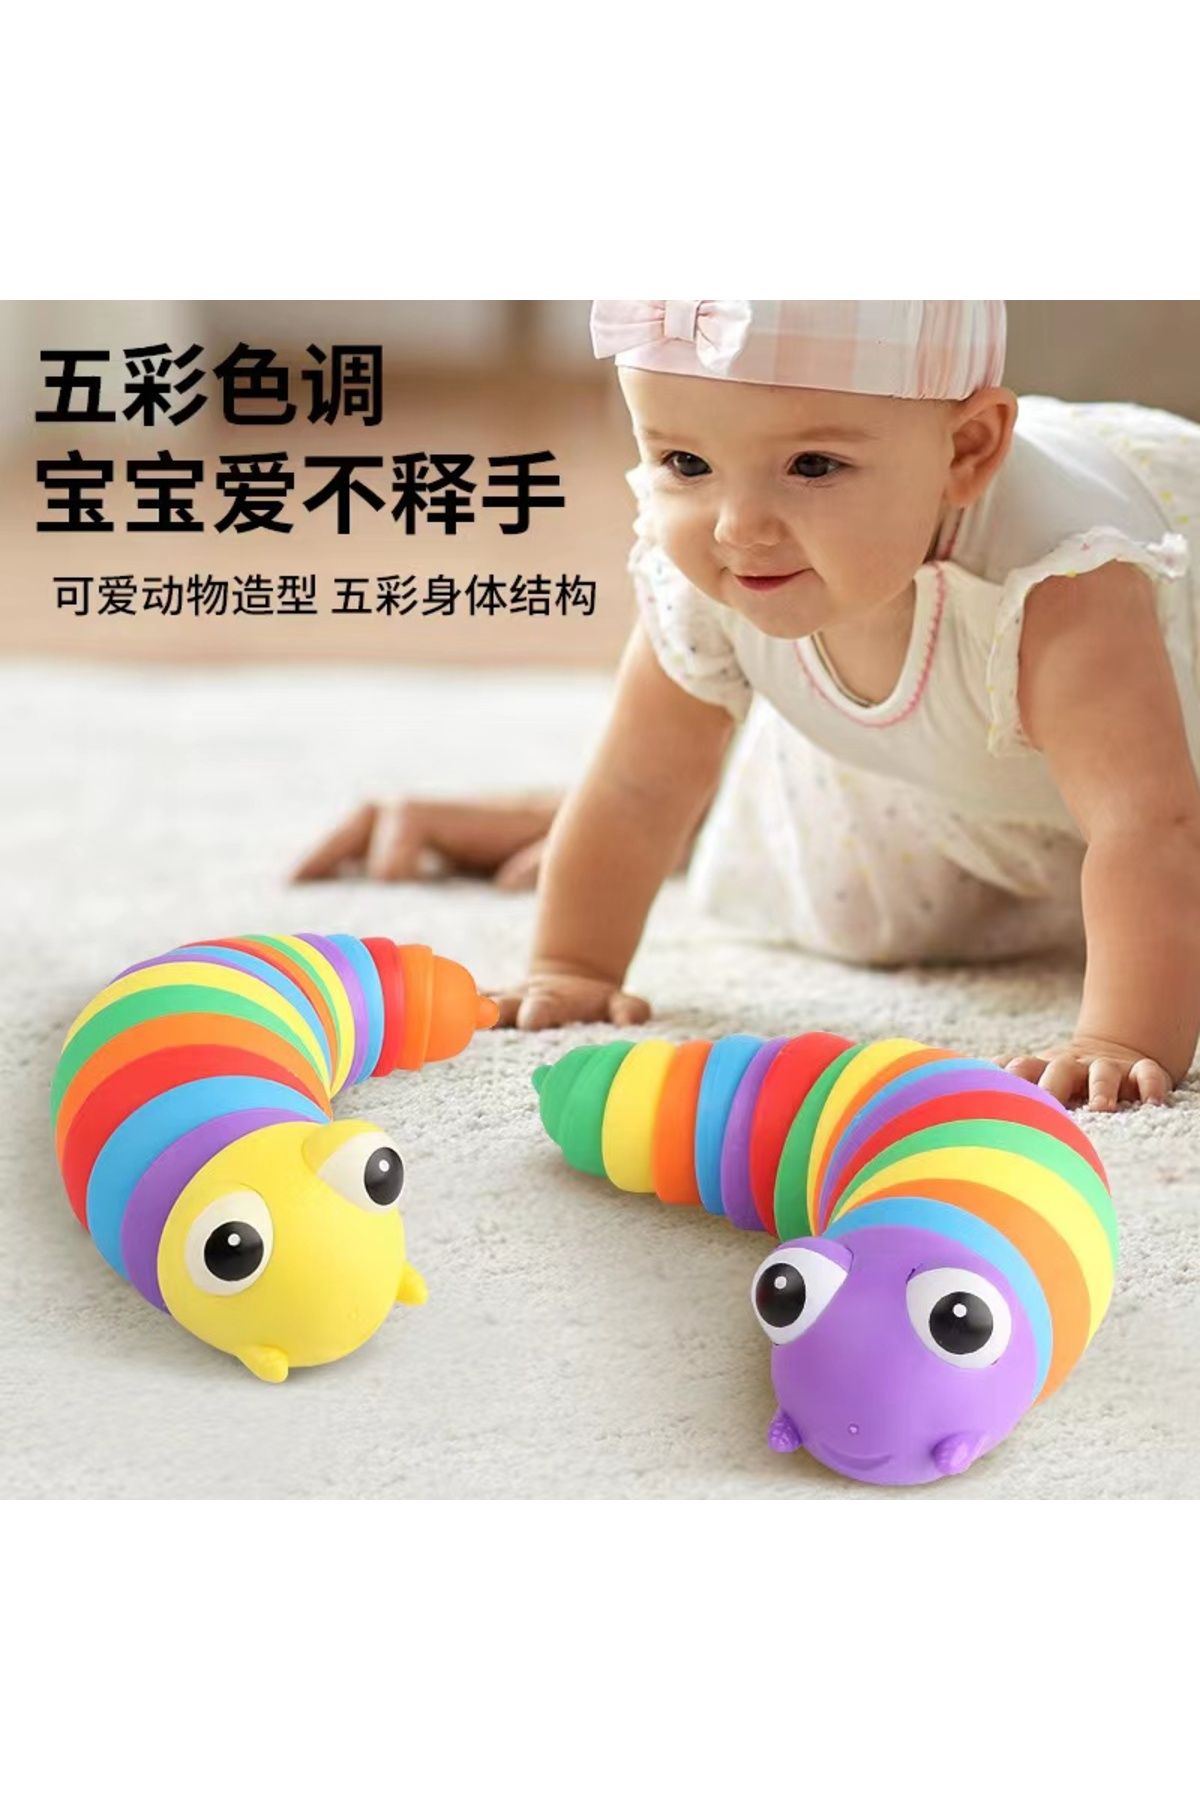 Kiesa Tırtıl Oyuncak Bebek Ve Çocuk İçin Tırtıl Oyuncak Sök-Tak Renkli Görsel Ve Duyu Geliştirici Oyuncak